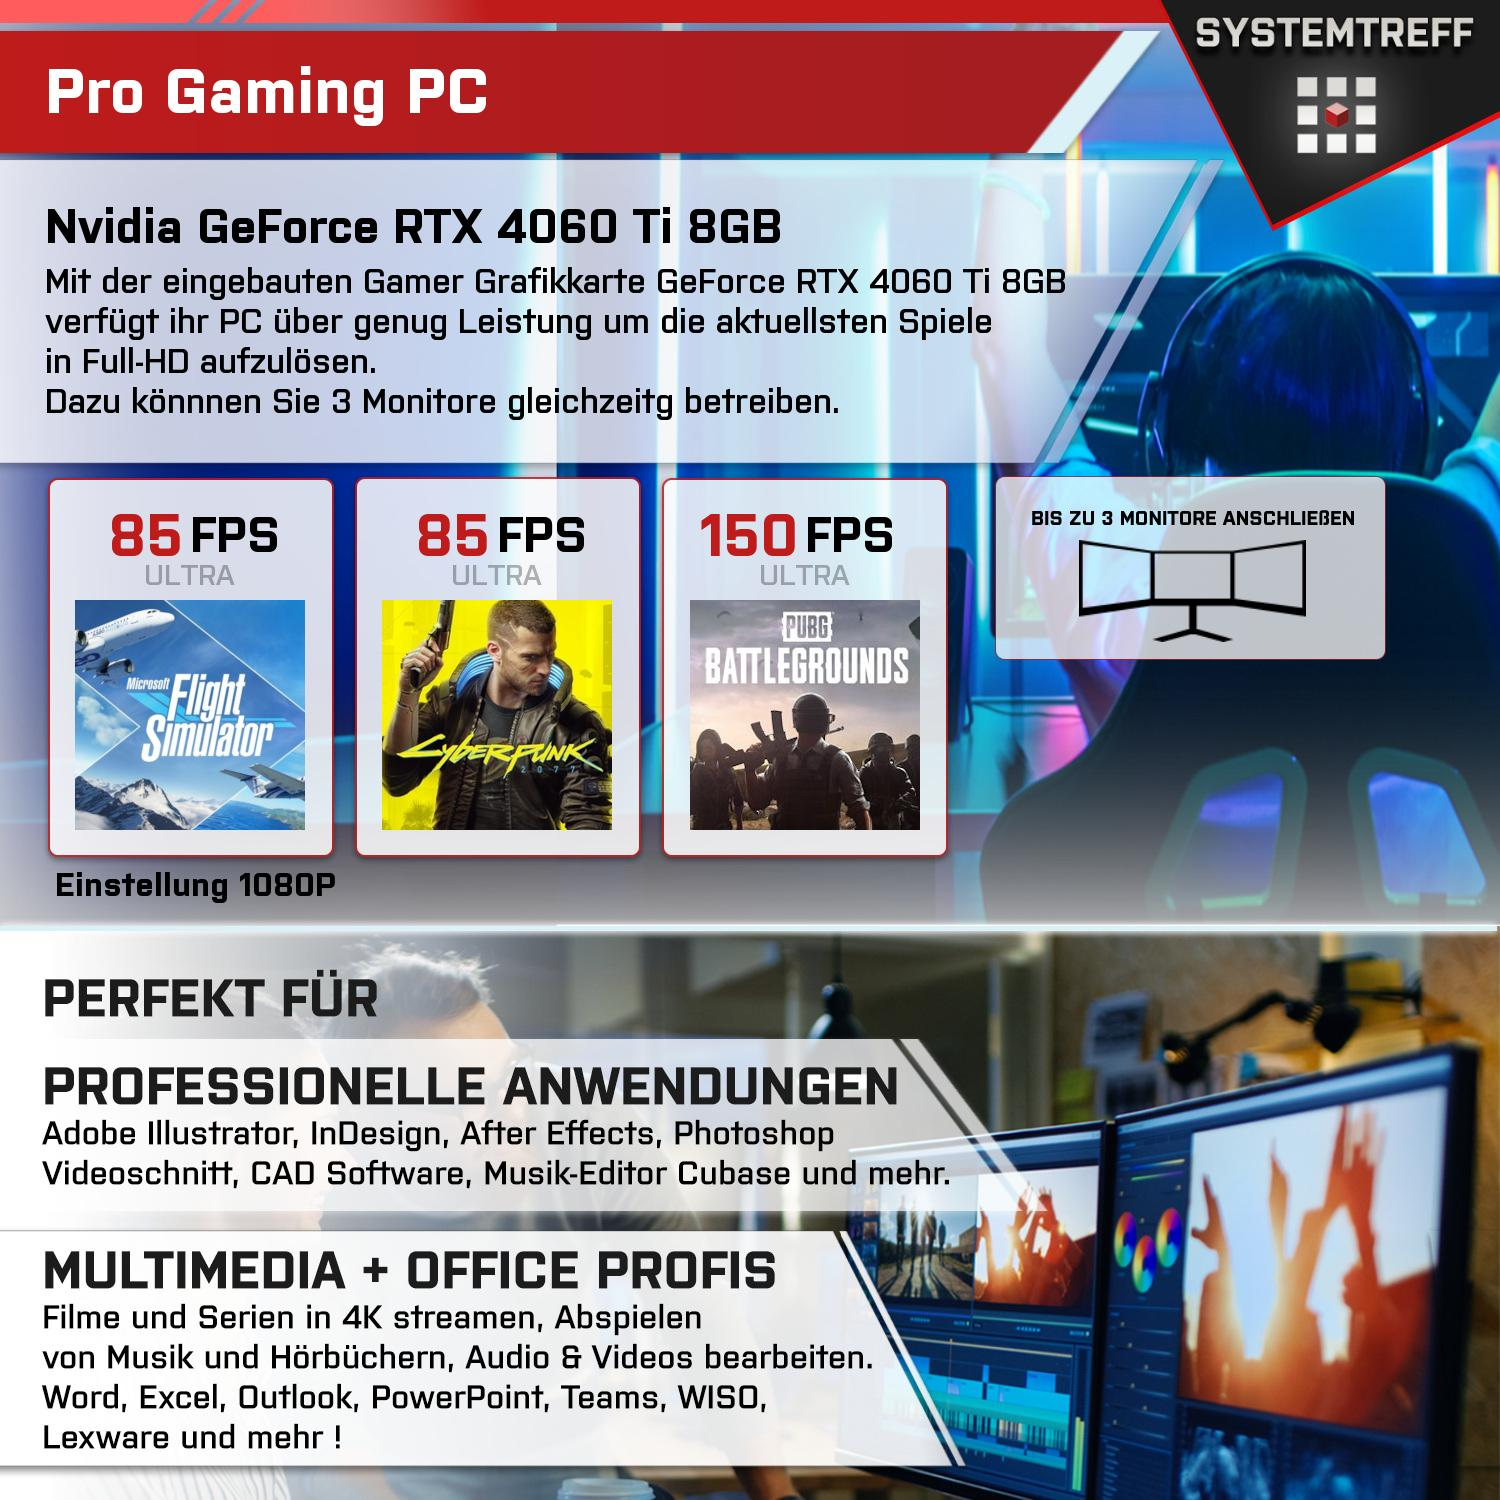 SYSTEMTREFF Gaming Komplett GB GB mit 8 mSSD, 4060Ti AMD GDDR6 9 PC 3, mit 32 Nvidia 5950X, RAM, GB Komplett DLSS Ryzen Prozessor, GeForce 5950X 8GB 1000 RTX